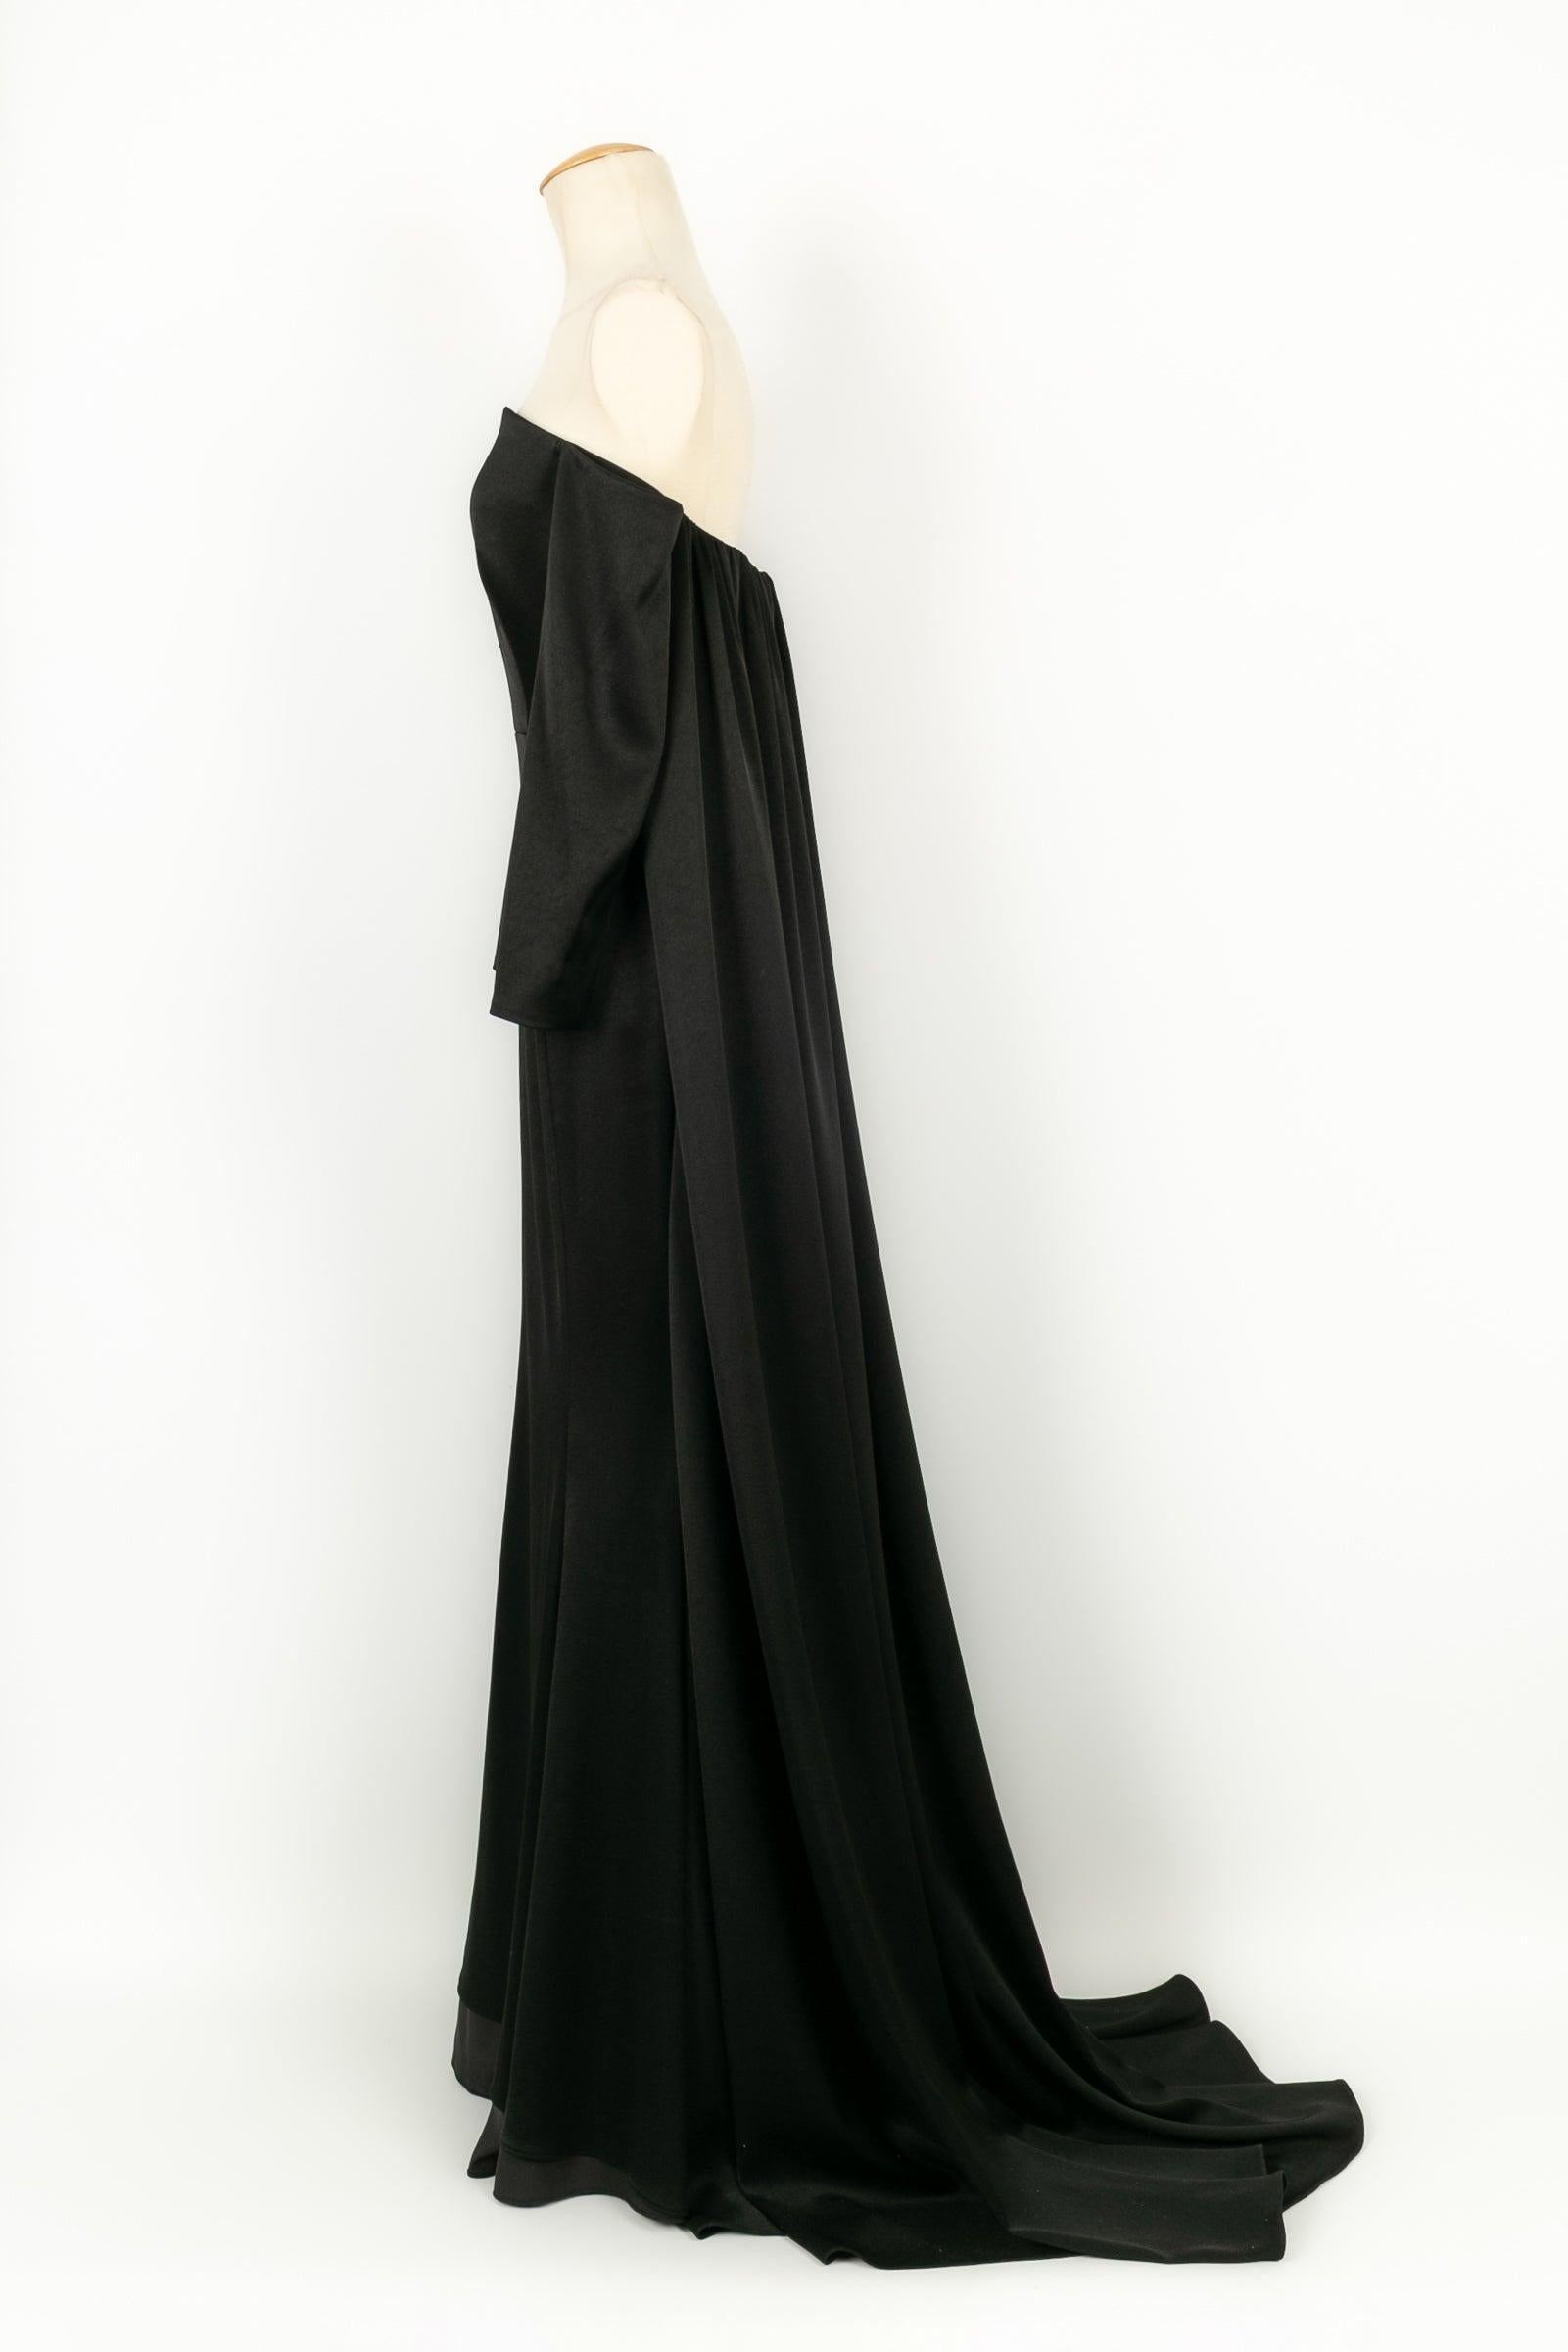 Paule Ka Black Maxi Dress in Duchess Satin, 2022 In Excellent Condition For Sale In SAINT-OUEN-SUR-SEINE, FR